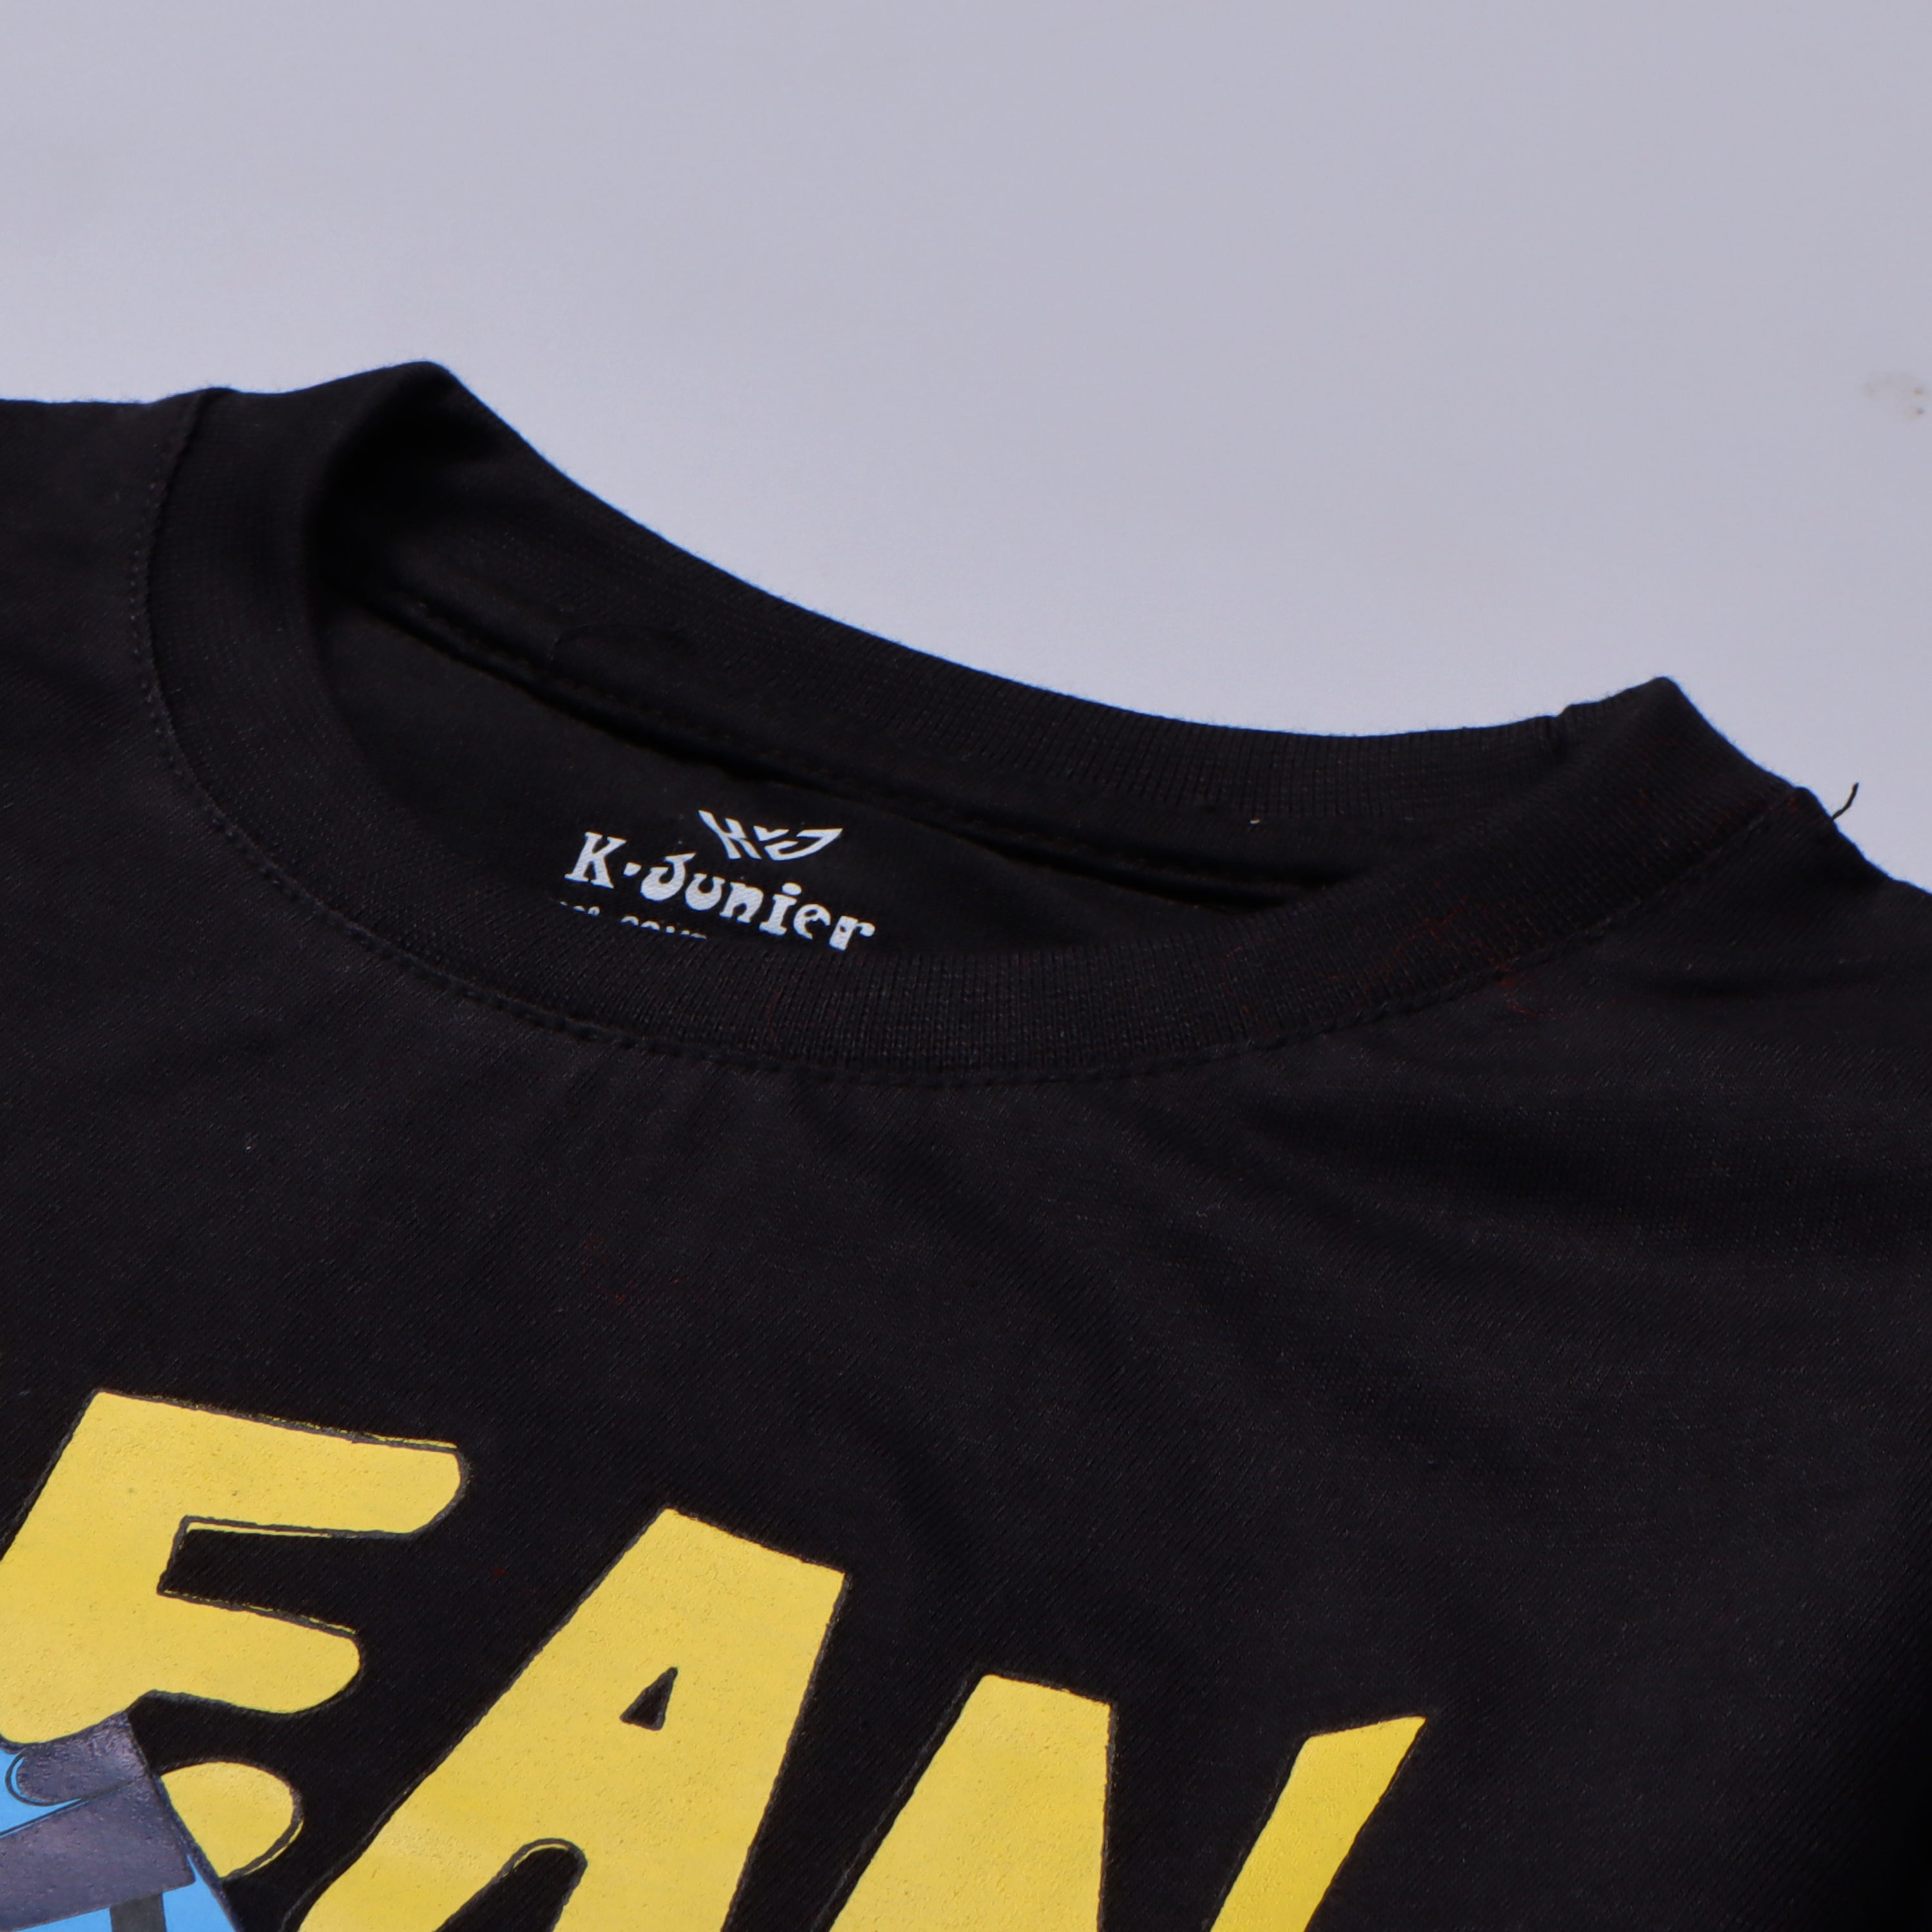 Boys Half Sleeves-Printed T-Shirt (Ocean)